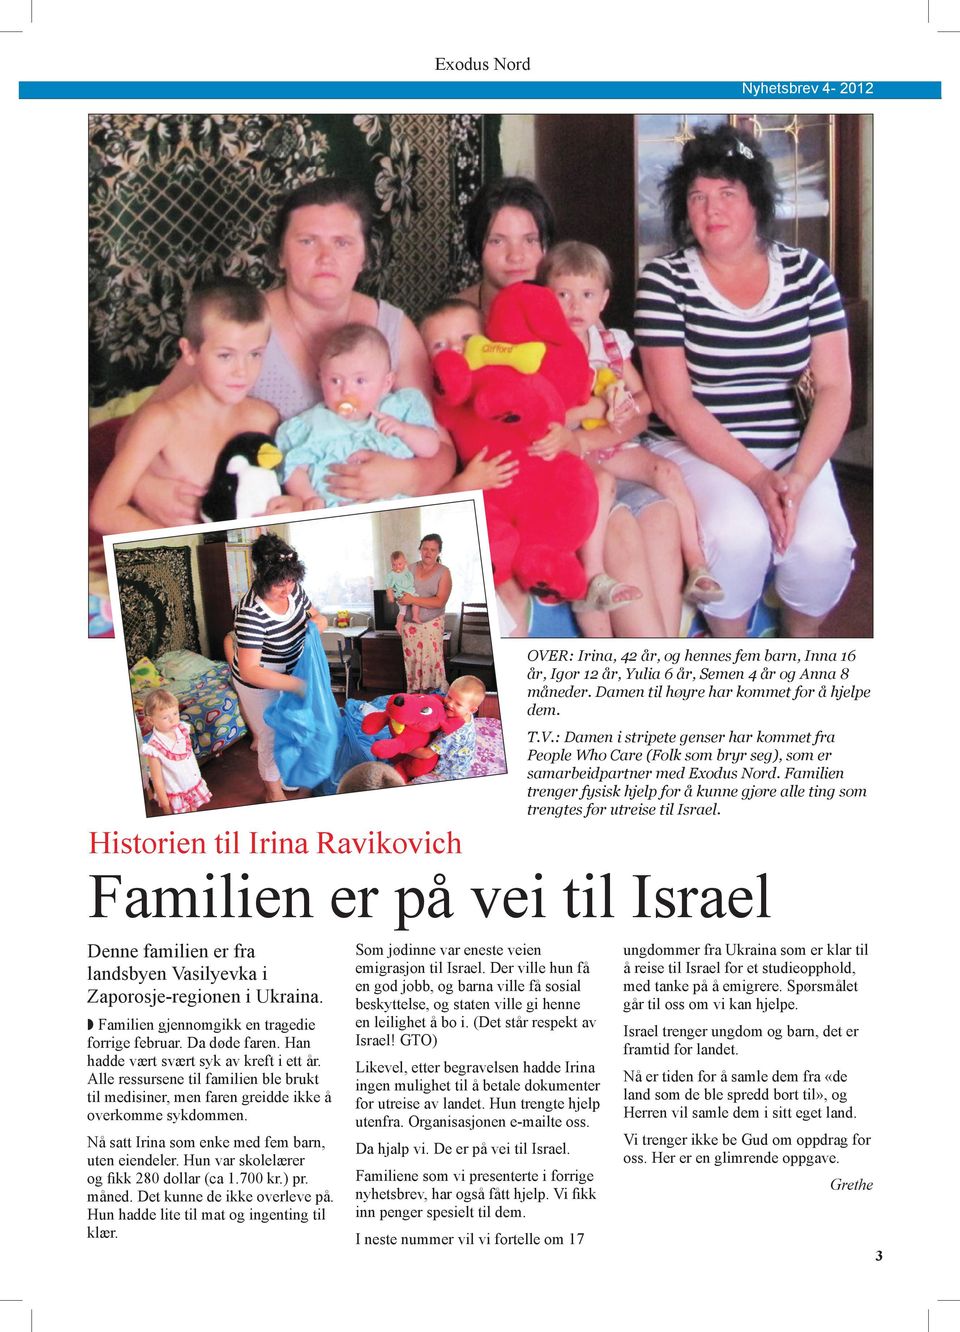 Historien til Irina Ravikovich Familien er på vei til Israel Denne familien er fra landsbyen Vasilyevka i Zaporosje-regionen i Ukraina. w Familien gjennomgikk en tragedie forrige februar.